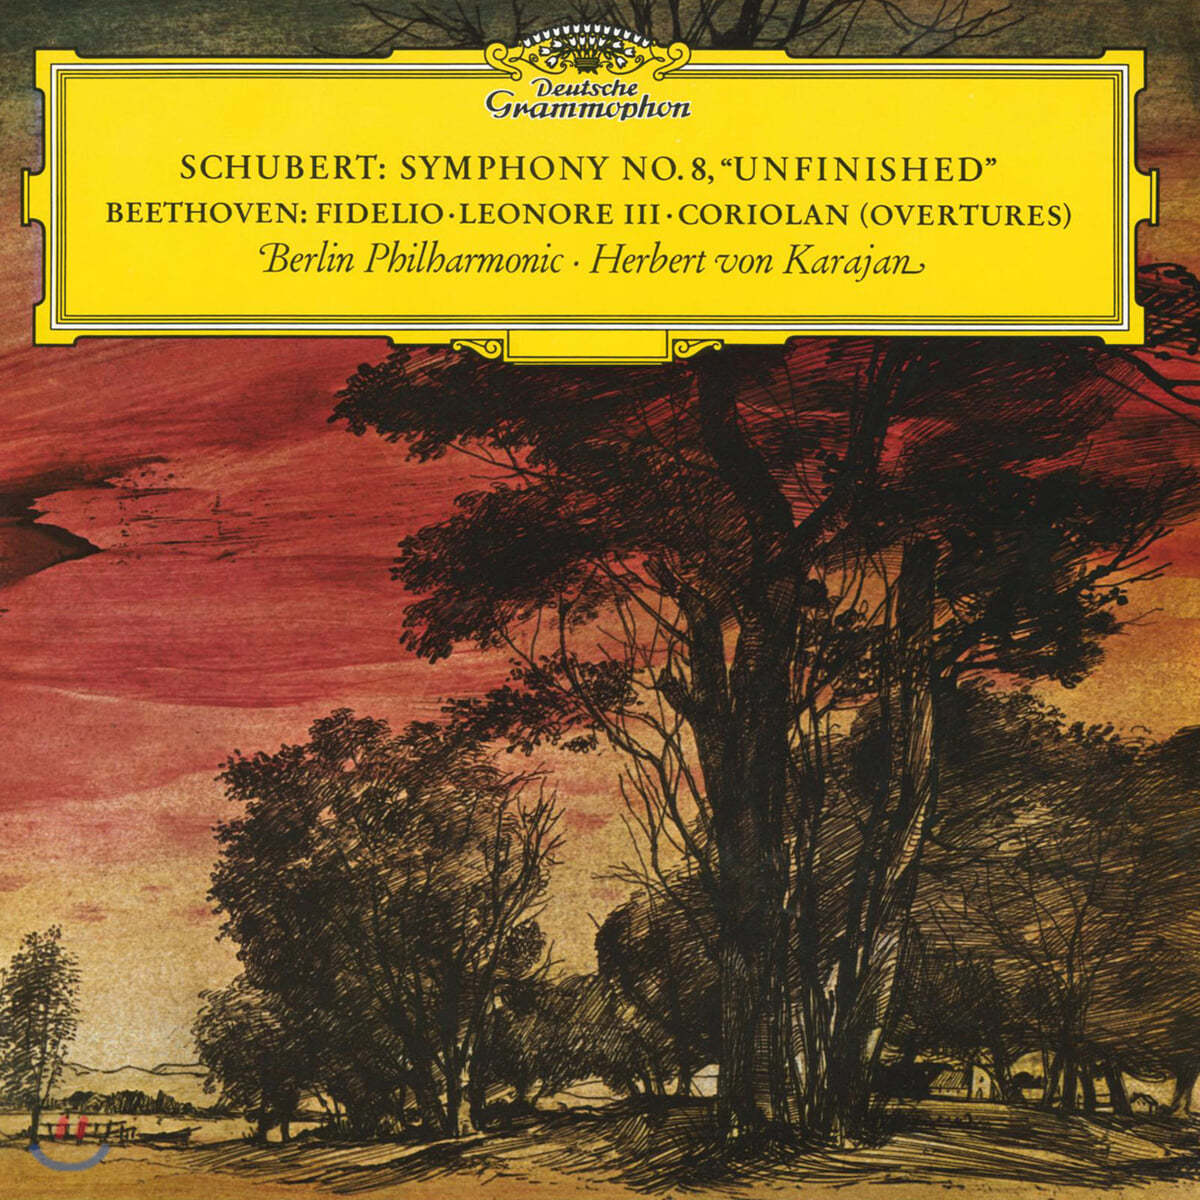 Herbert von Karajan 슈베르트: 미완성 교향곡 / 베토벤: 피델리오, 레오노레, 코리올란 서곡 - 카라얀 [LP]